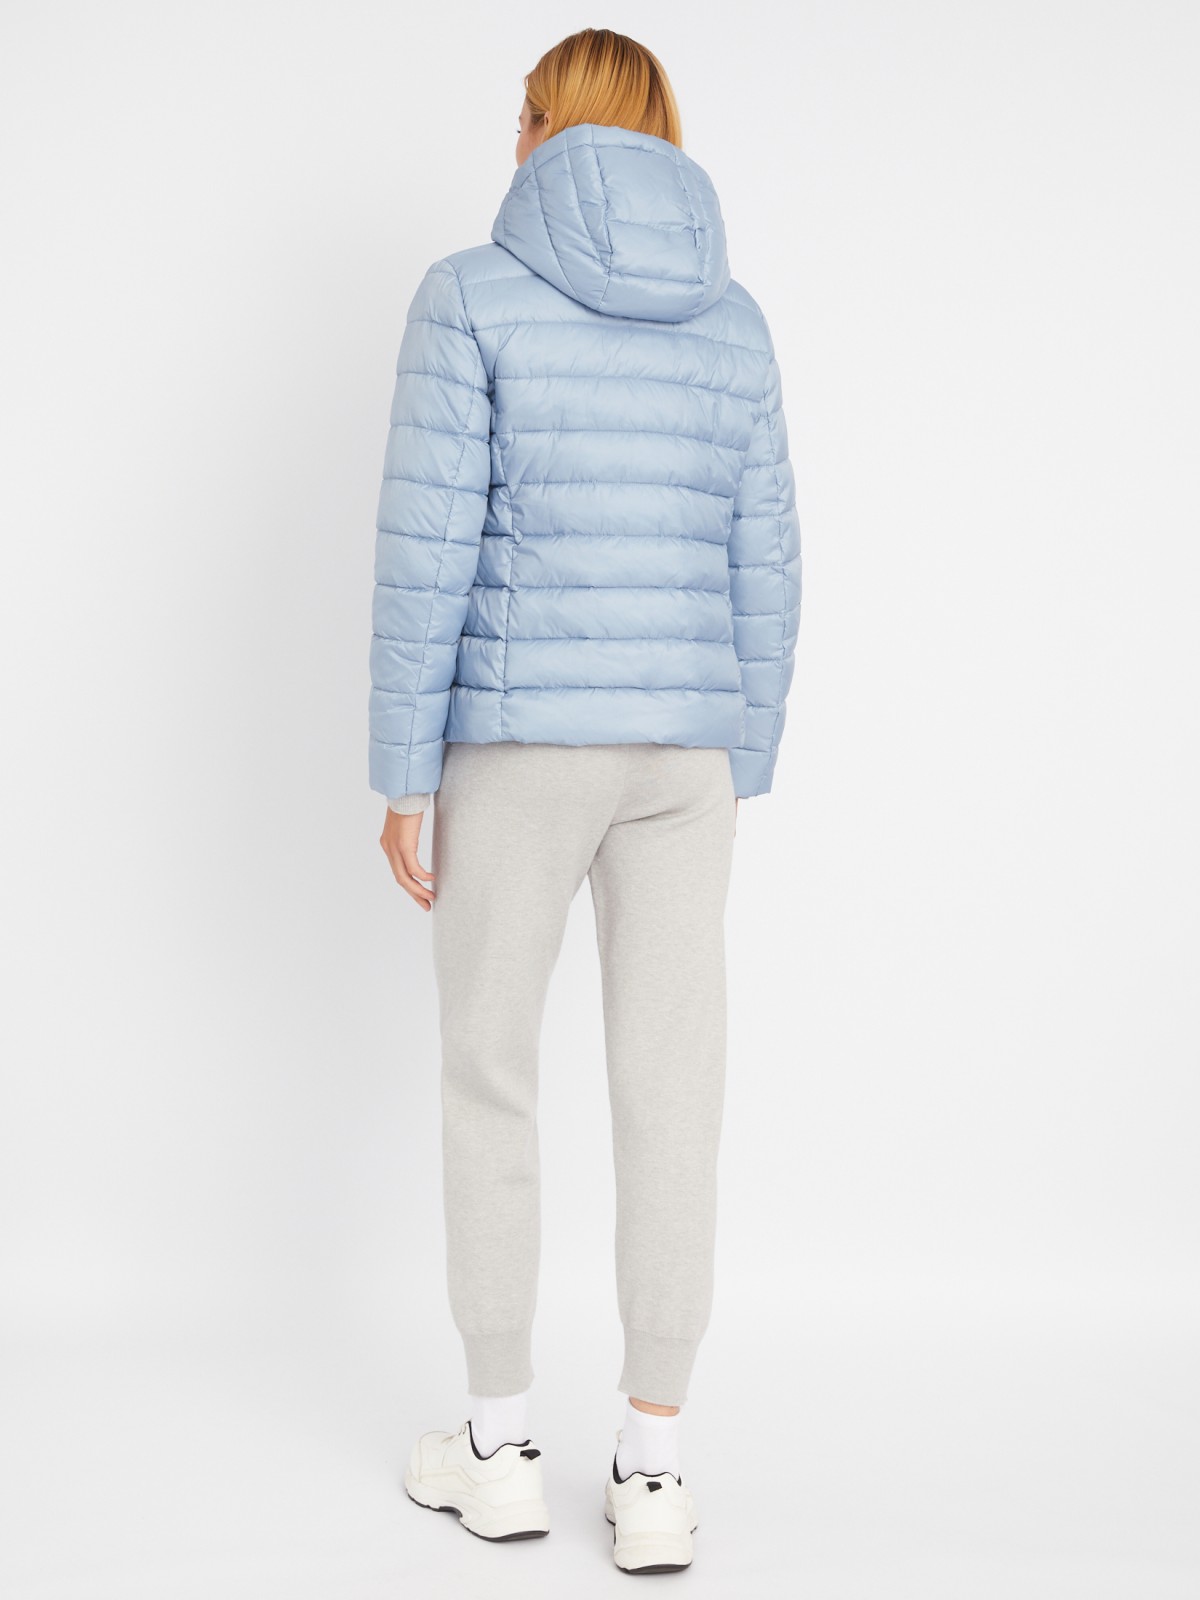 Утеплённая стёганая куртка укороченного фасона с капюшоном zolla 023335112224, цвет голубой, размер S - фото 6